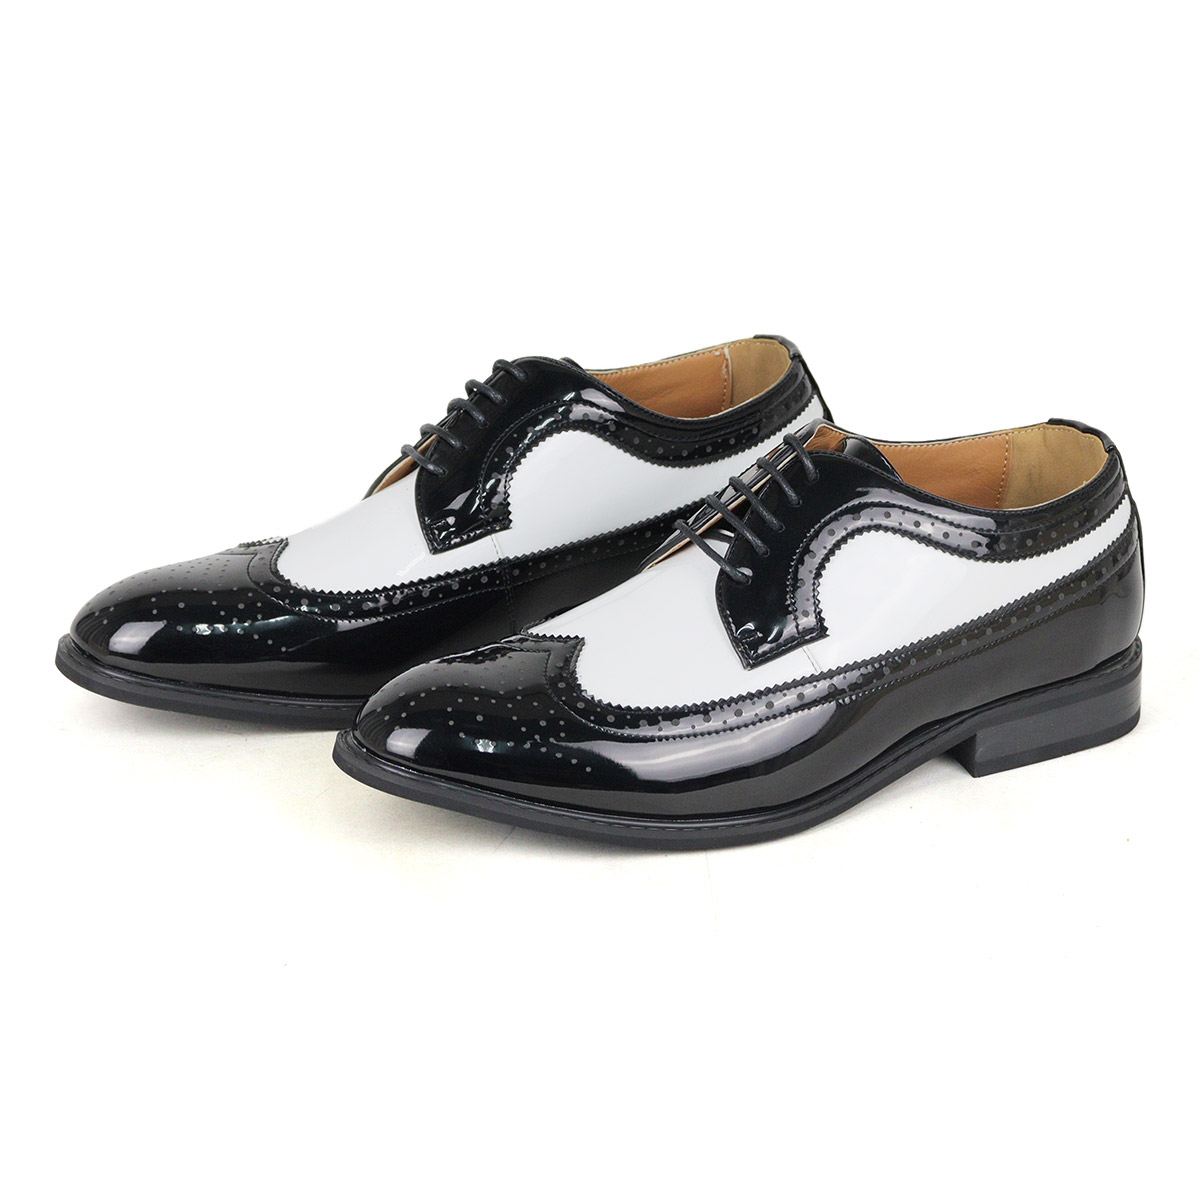 オックスフォードシューズ メンズ 革靴 黒 ウイングチップ 3E 24.5-30cm No.802 ラスアンドフリス セット割引対象1足税込3575円